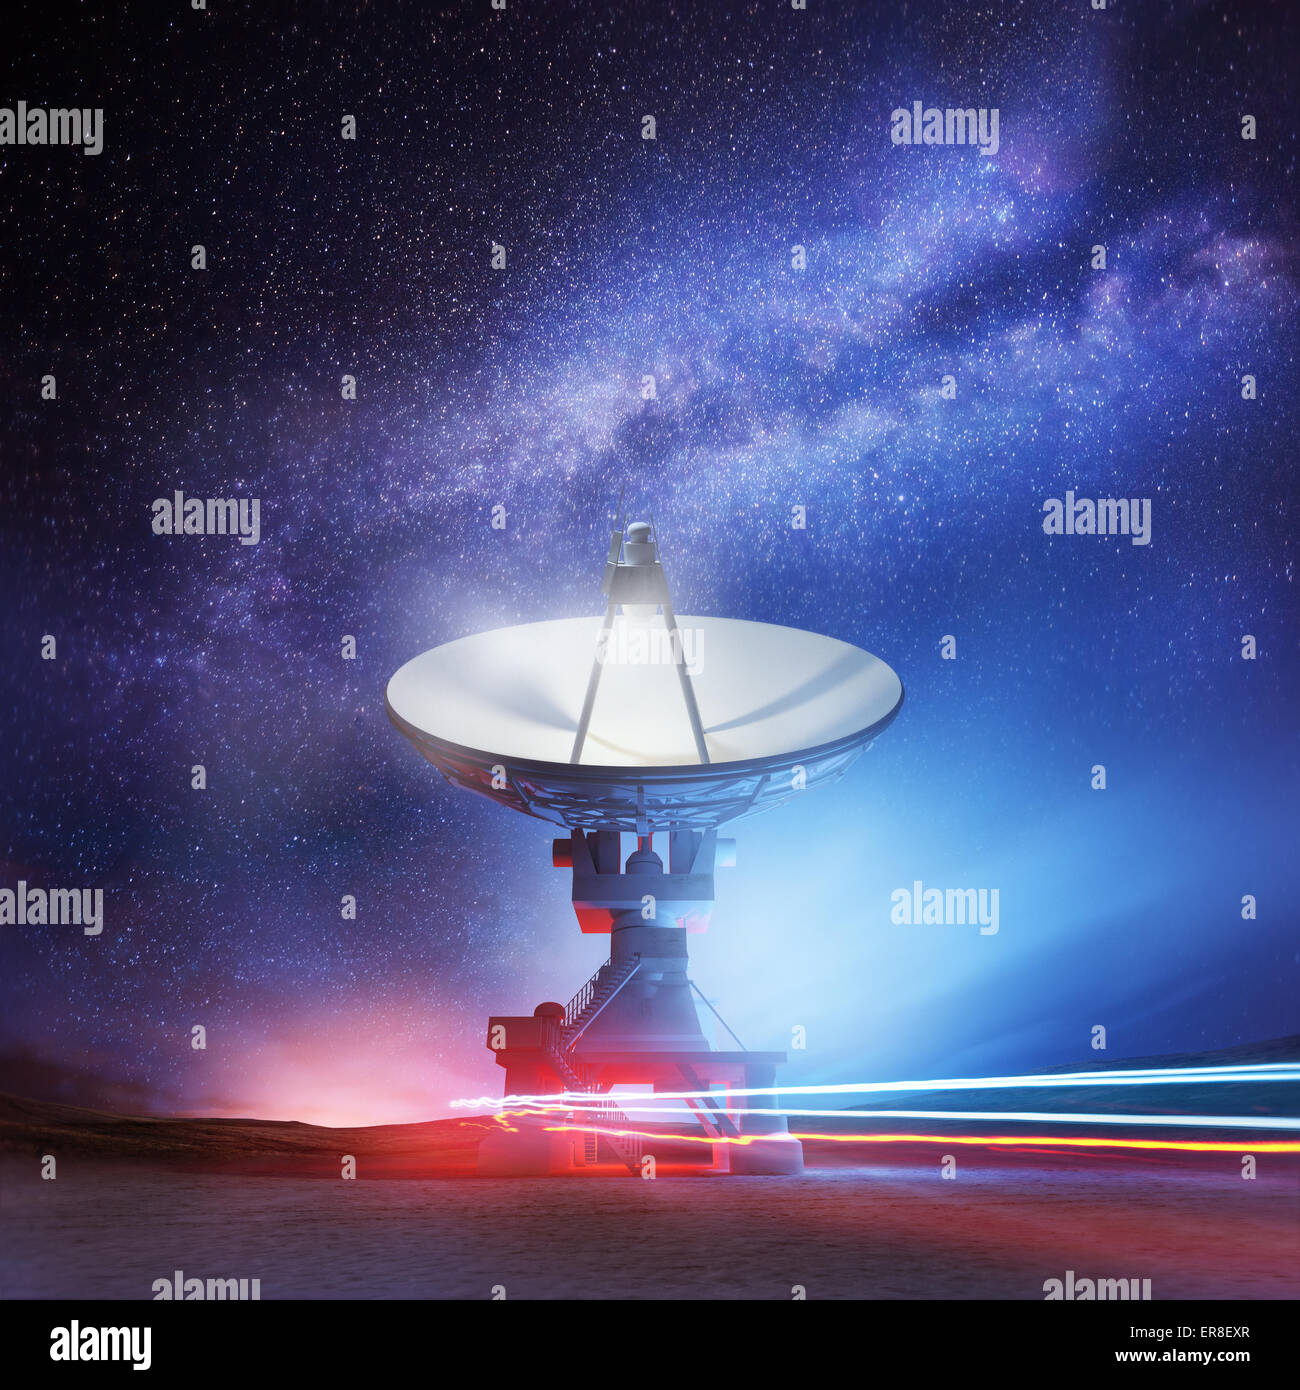 Ein Radioteleskop nach oben zeigend in den Nachthimmel. Astronomie-Hintergrund. Abbildung. Stockfoto